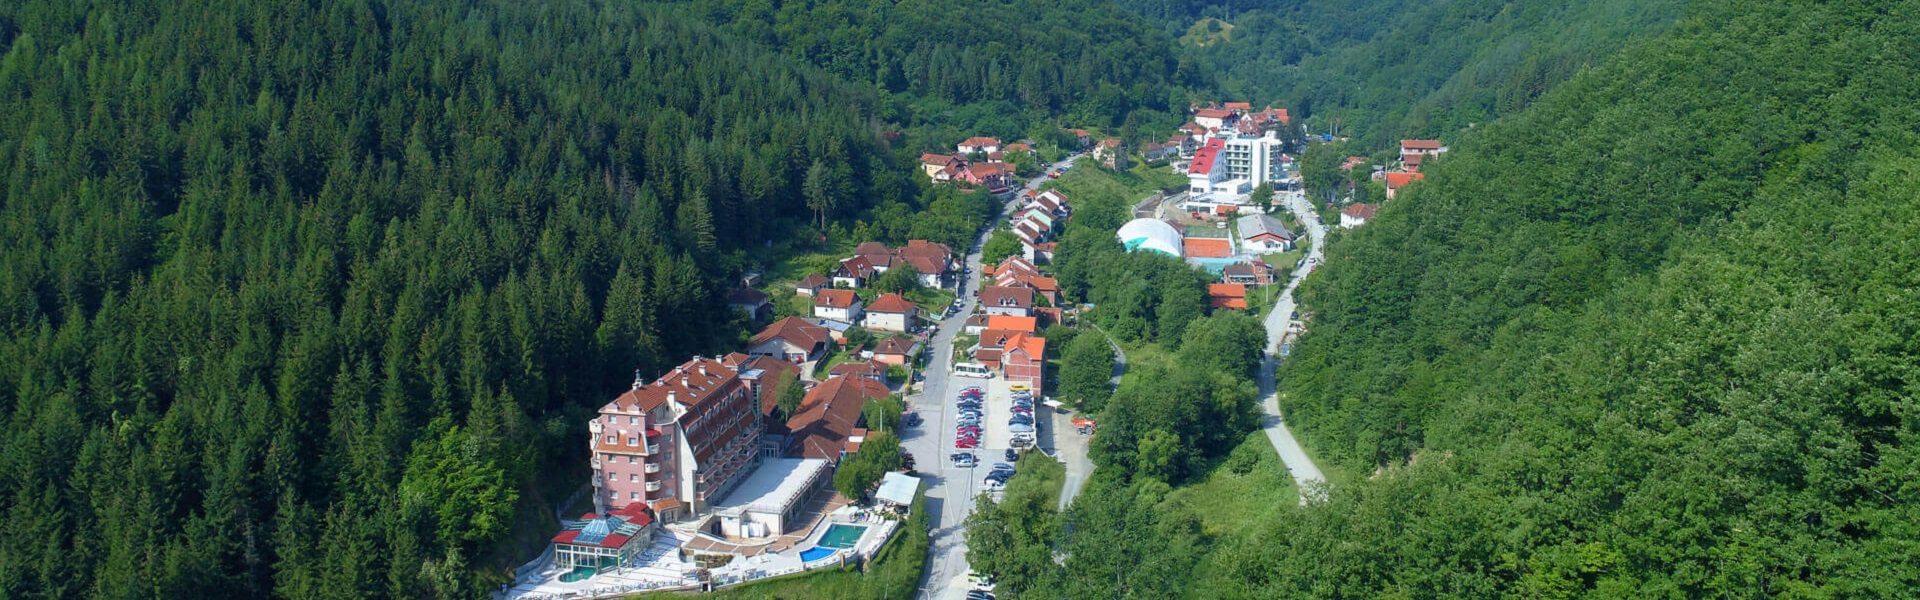 Prečišćivač vazduha - Jonizator | Lukovska banja u Srbiji